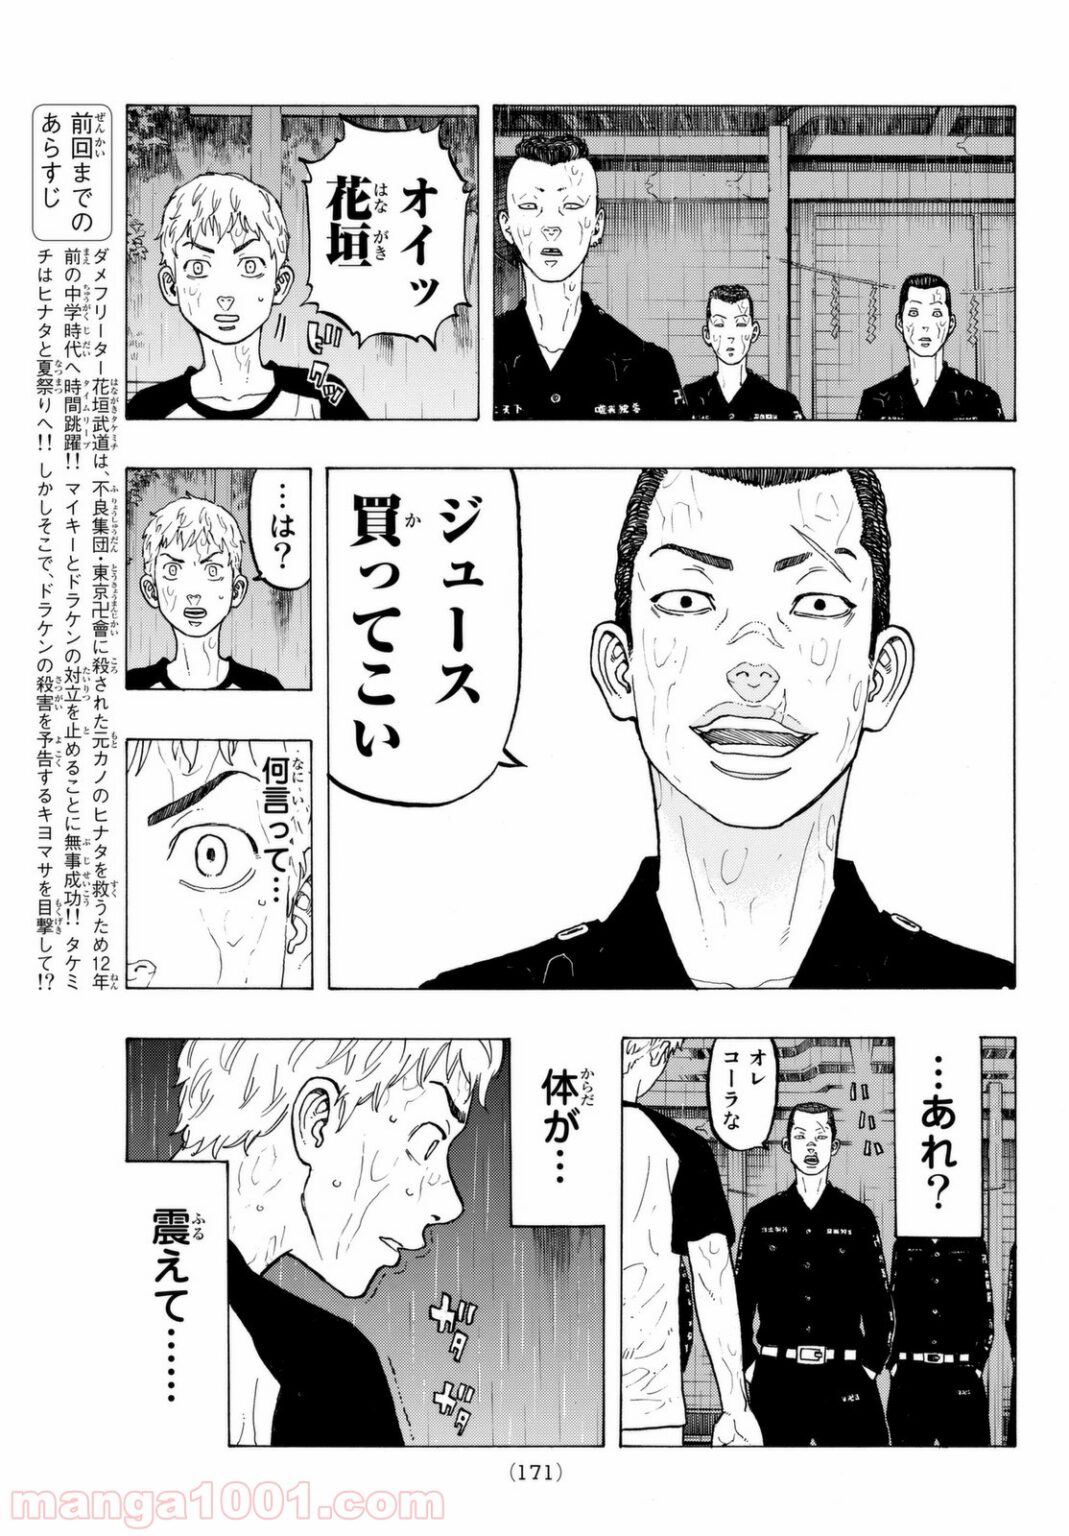 『東京卍リベンジャーズ』漫画3巻を無料で読むには？ | WAVY